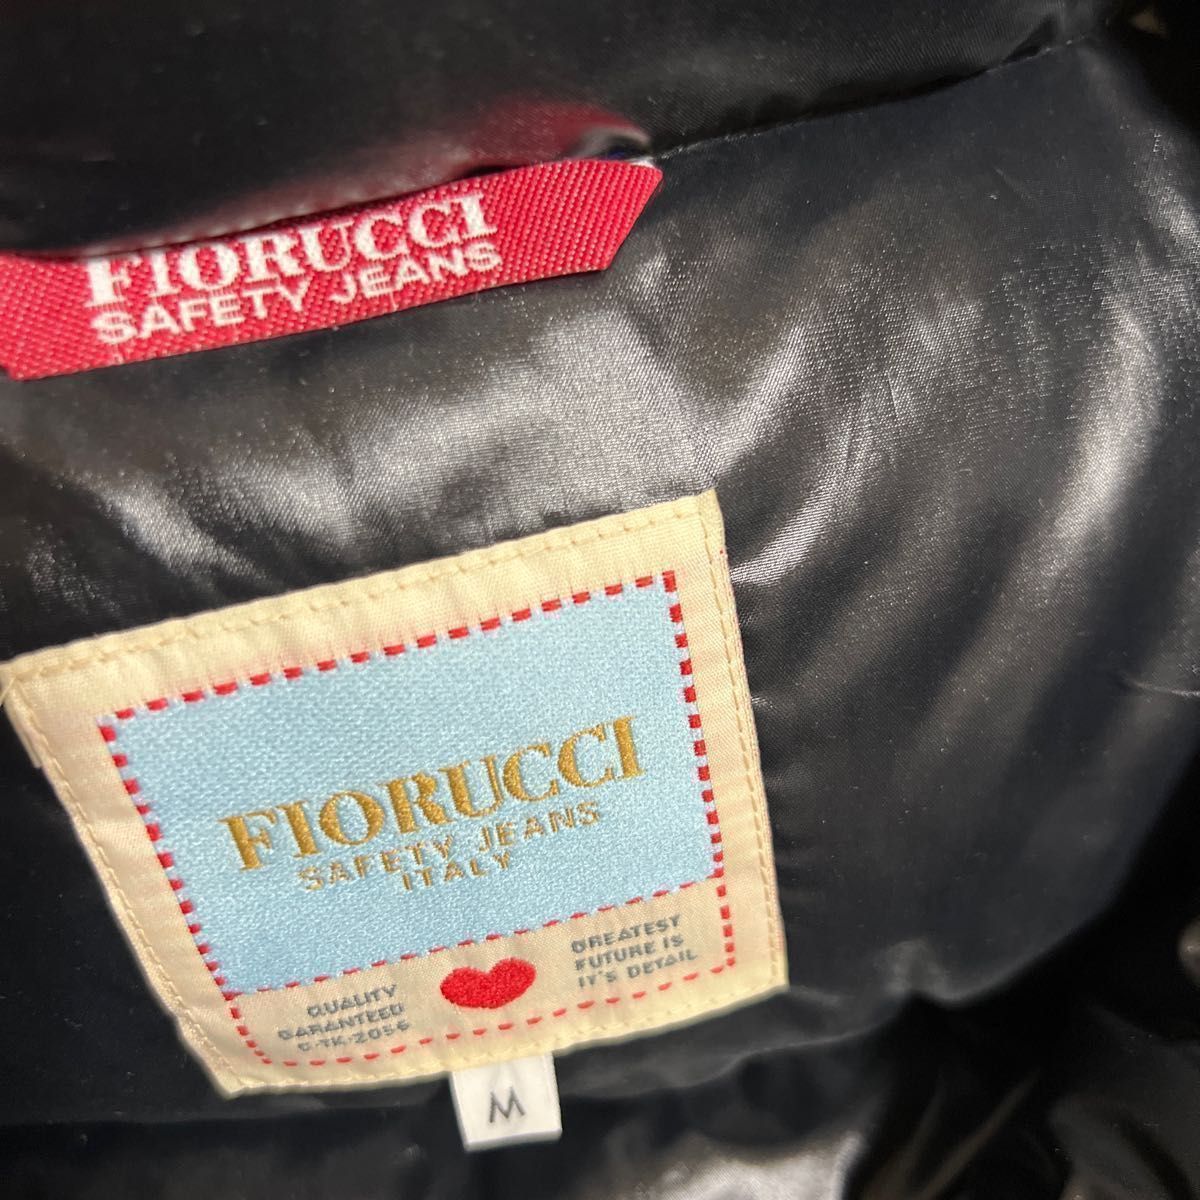 【未使用訳あり】Fiorucci ダウンジャケット M  ブラック スキー スノボ 雪 防寒 保温  防風 黒  良質羽毛